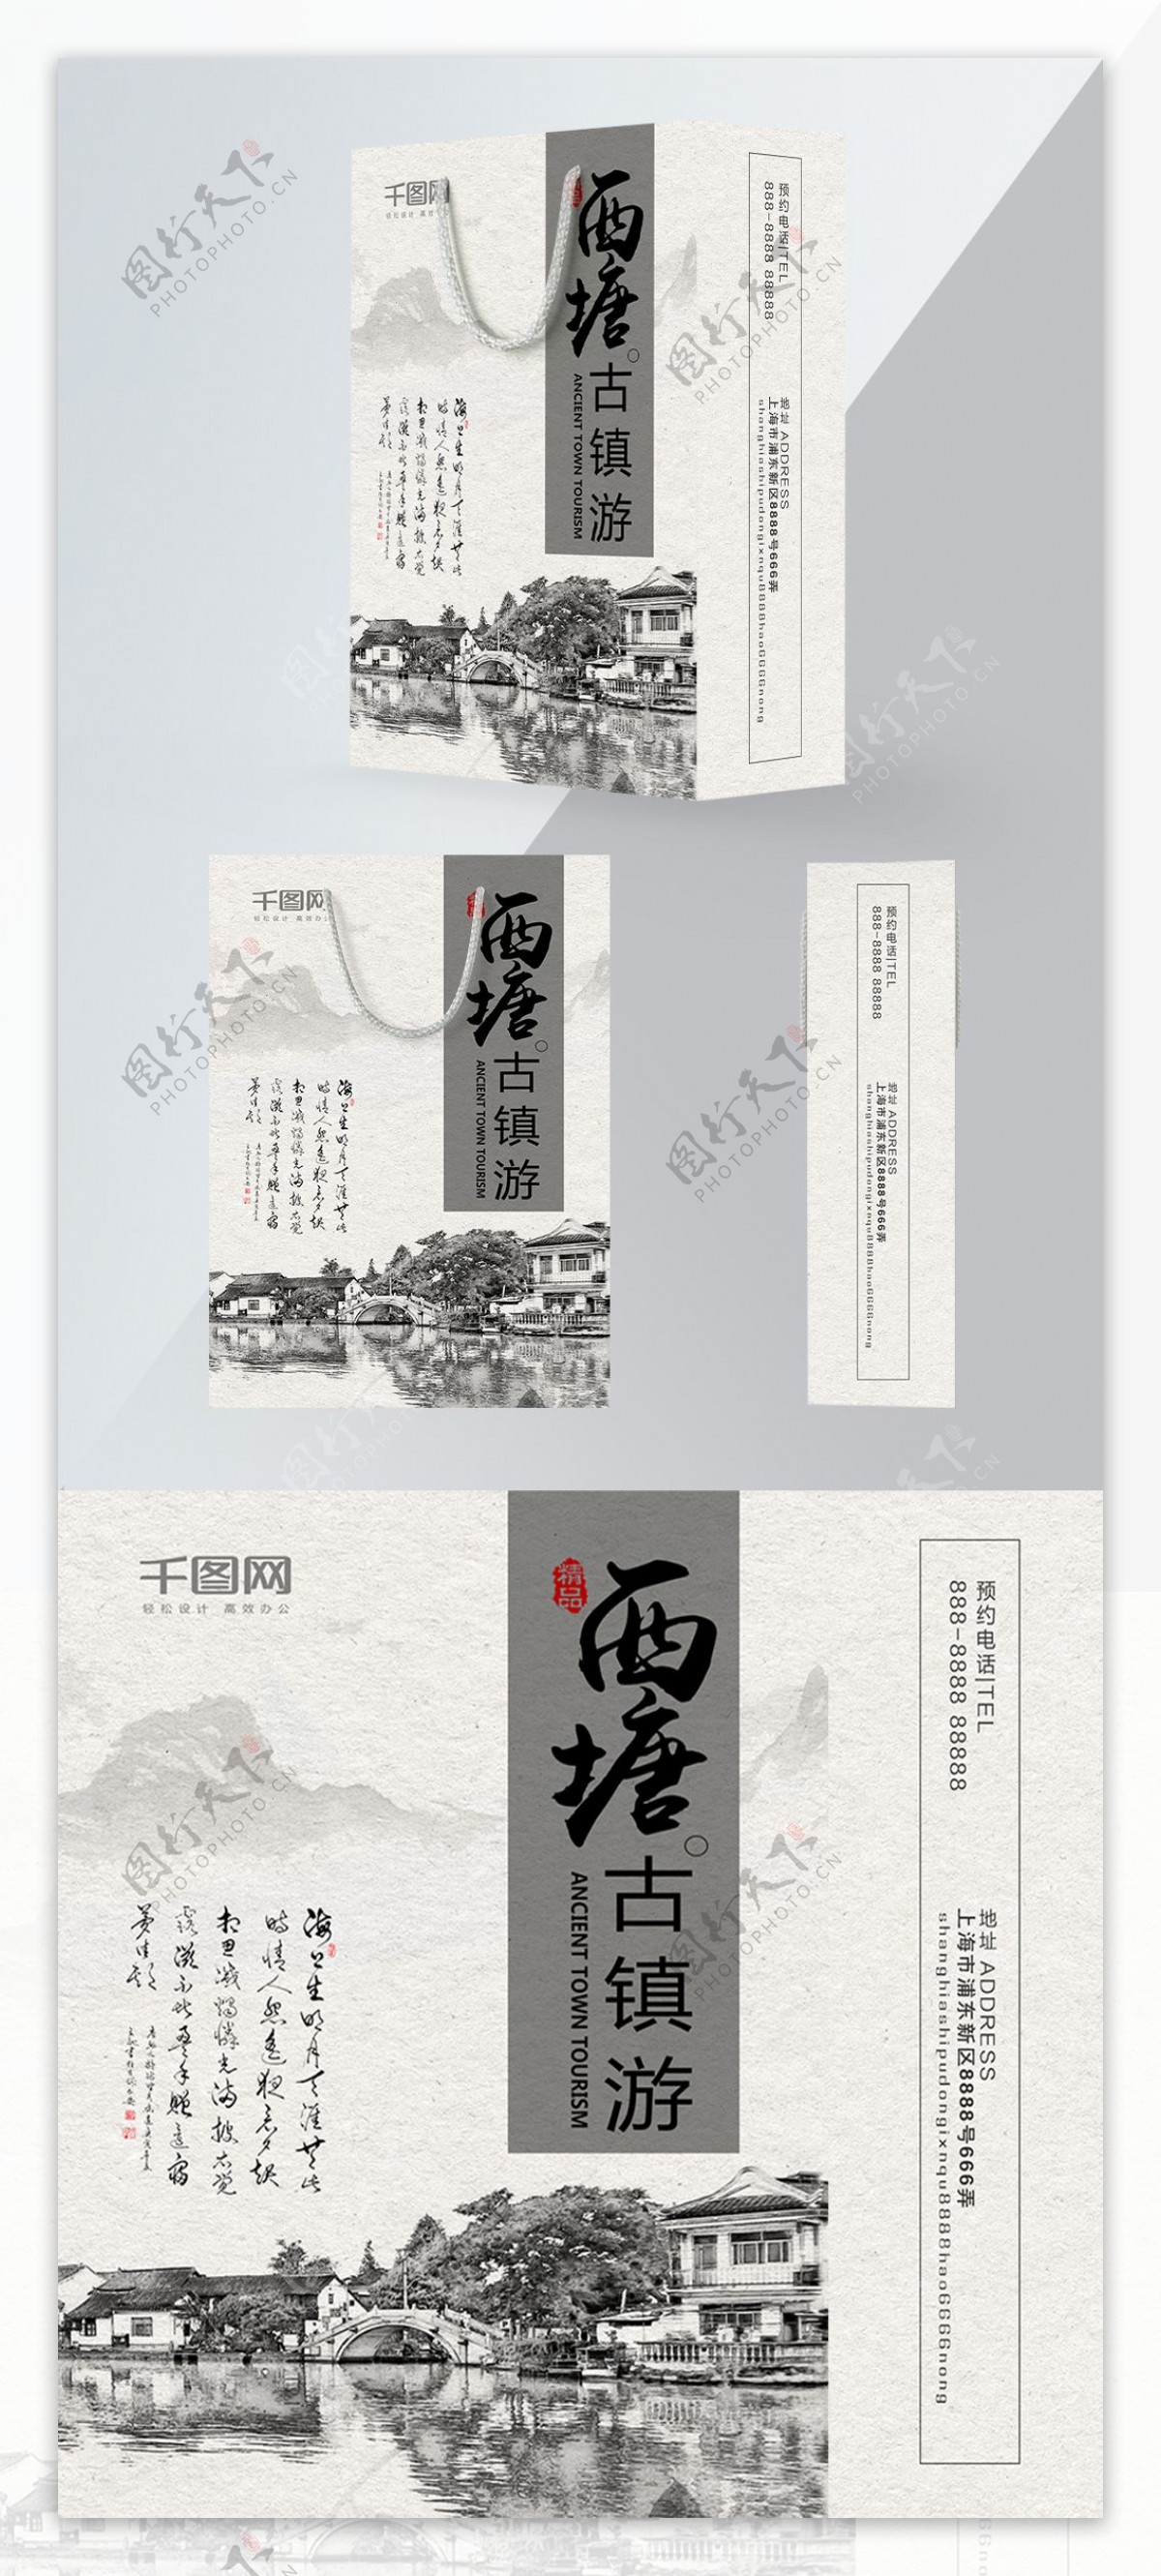 精品手提袋中国风西塘旅游包装设计